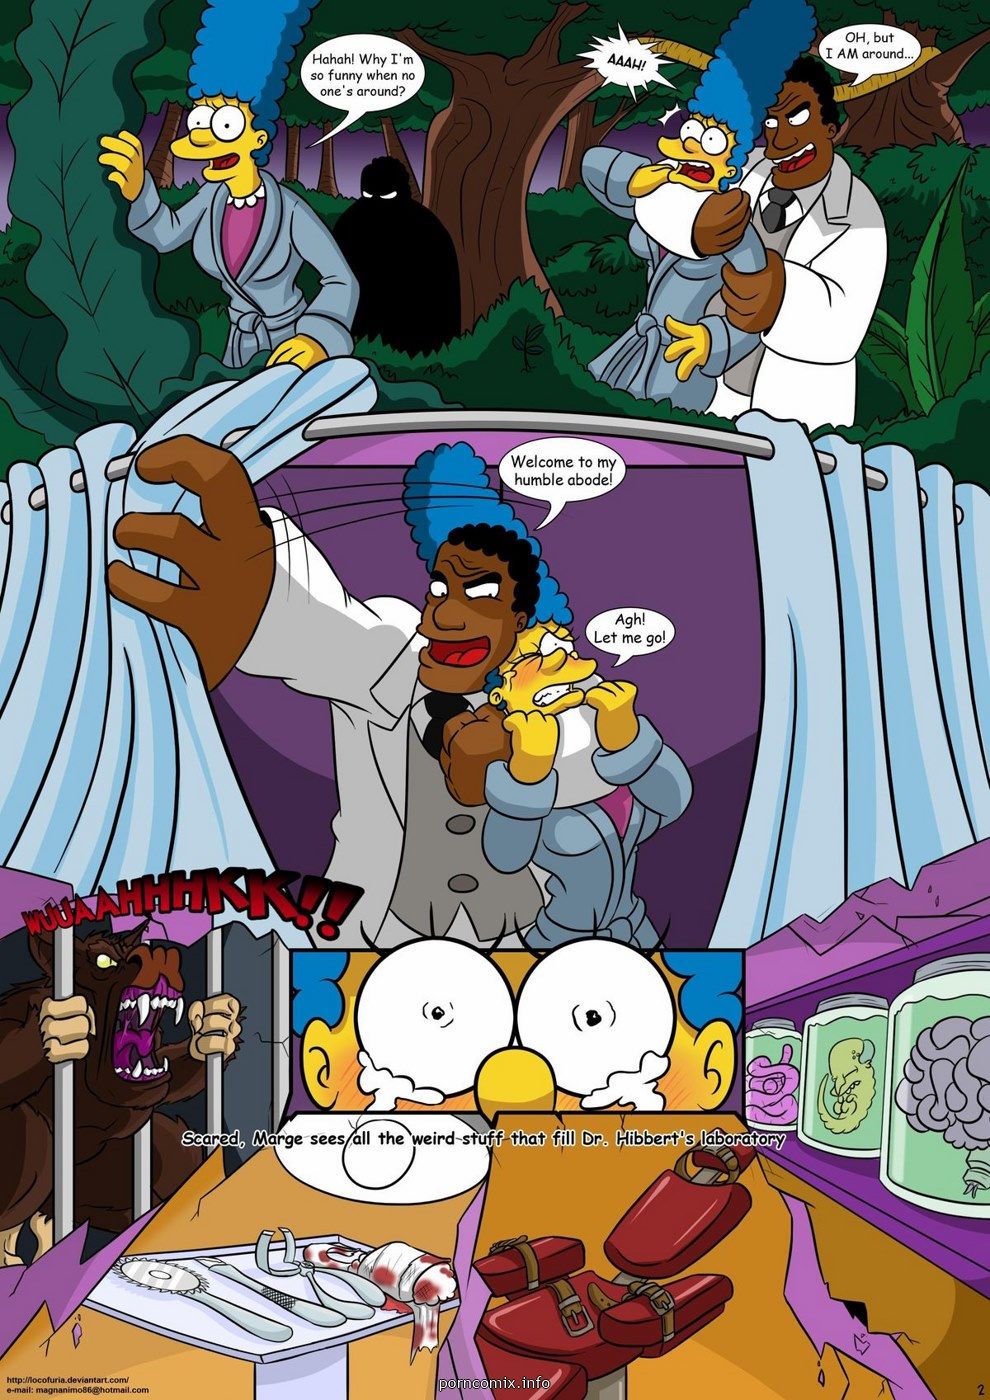 Kogeikun, Simpsons - Treehouse of Horror 1 page 3